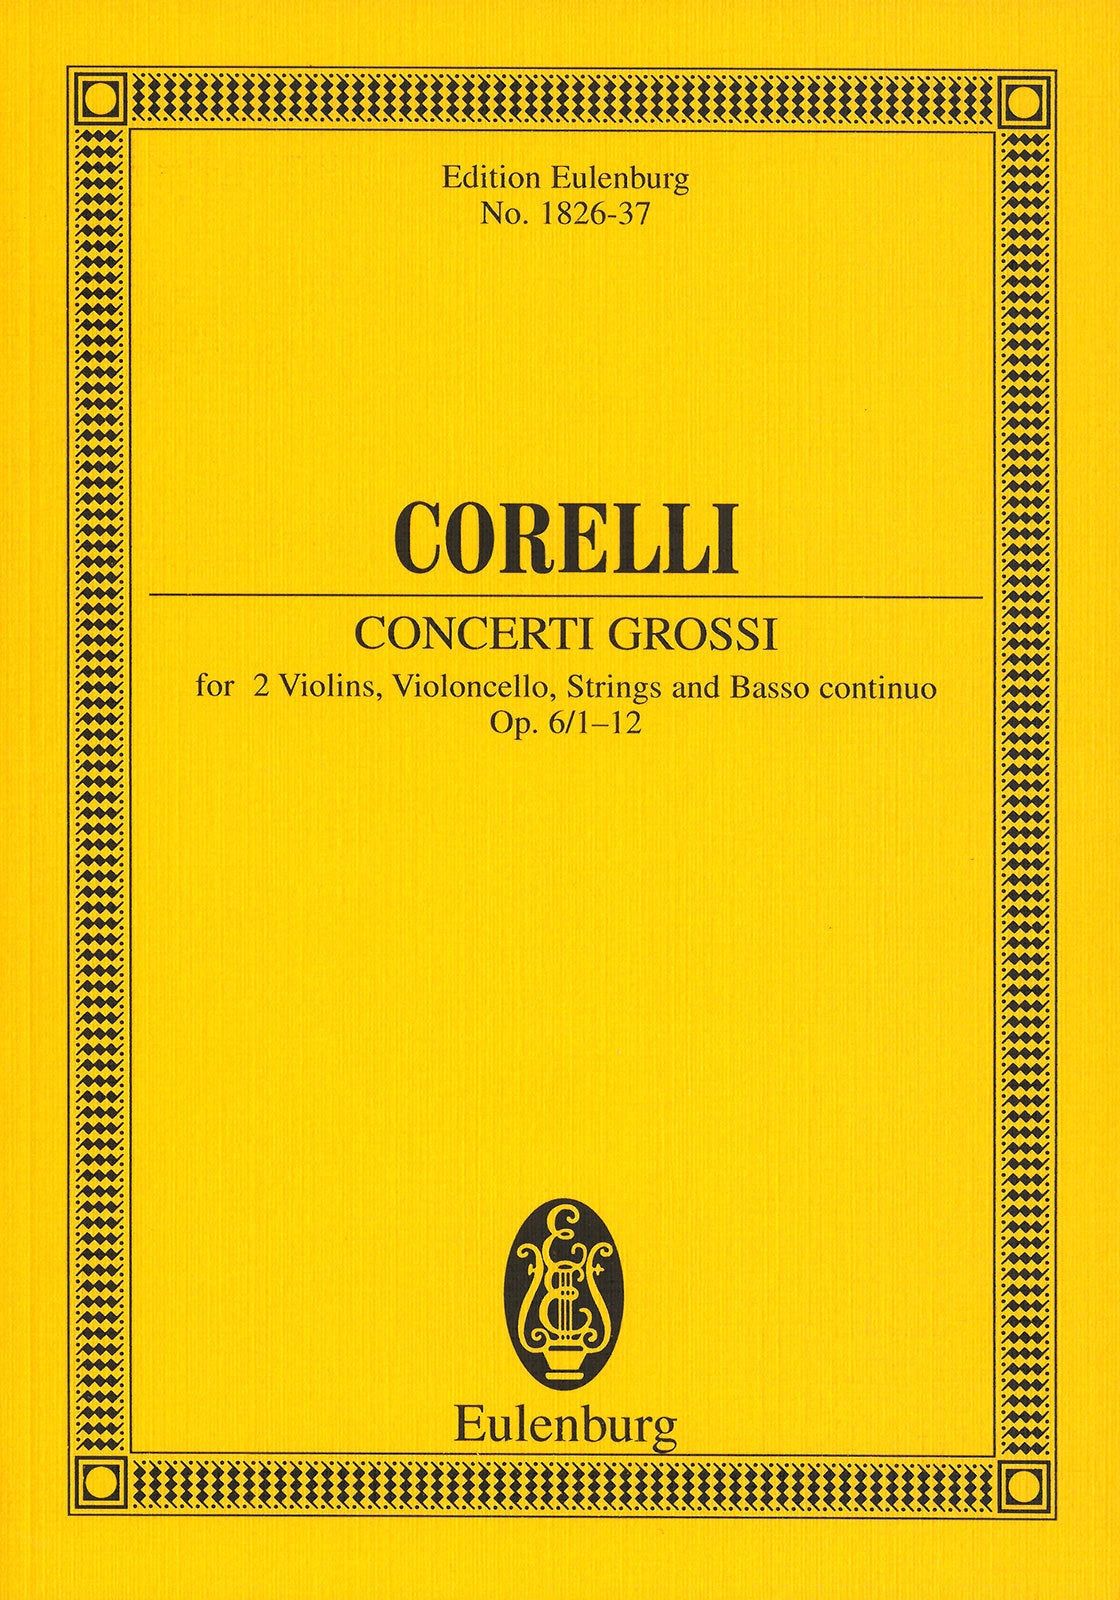 Corelli: 12 Concerti grossi, Op. 6